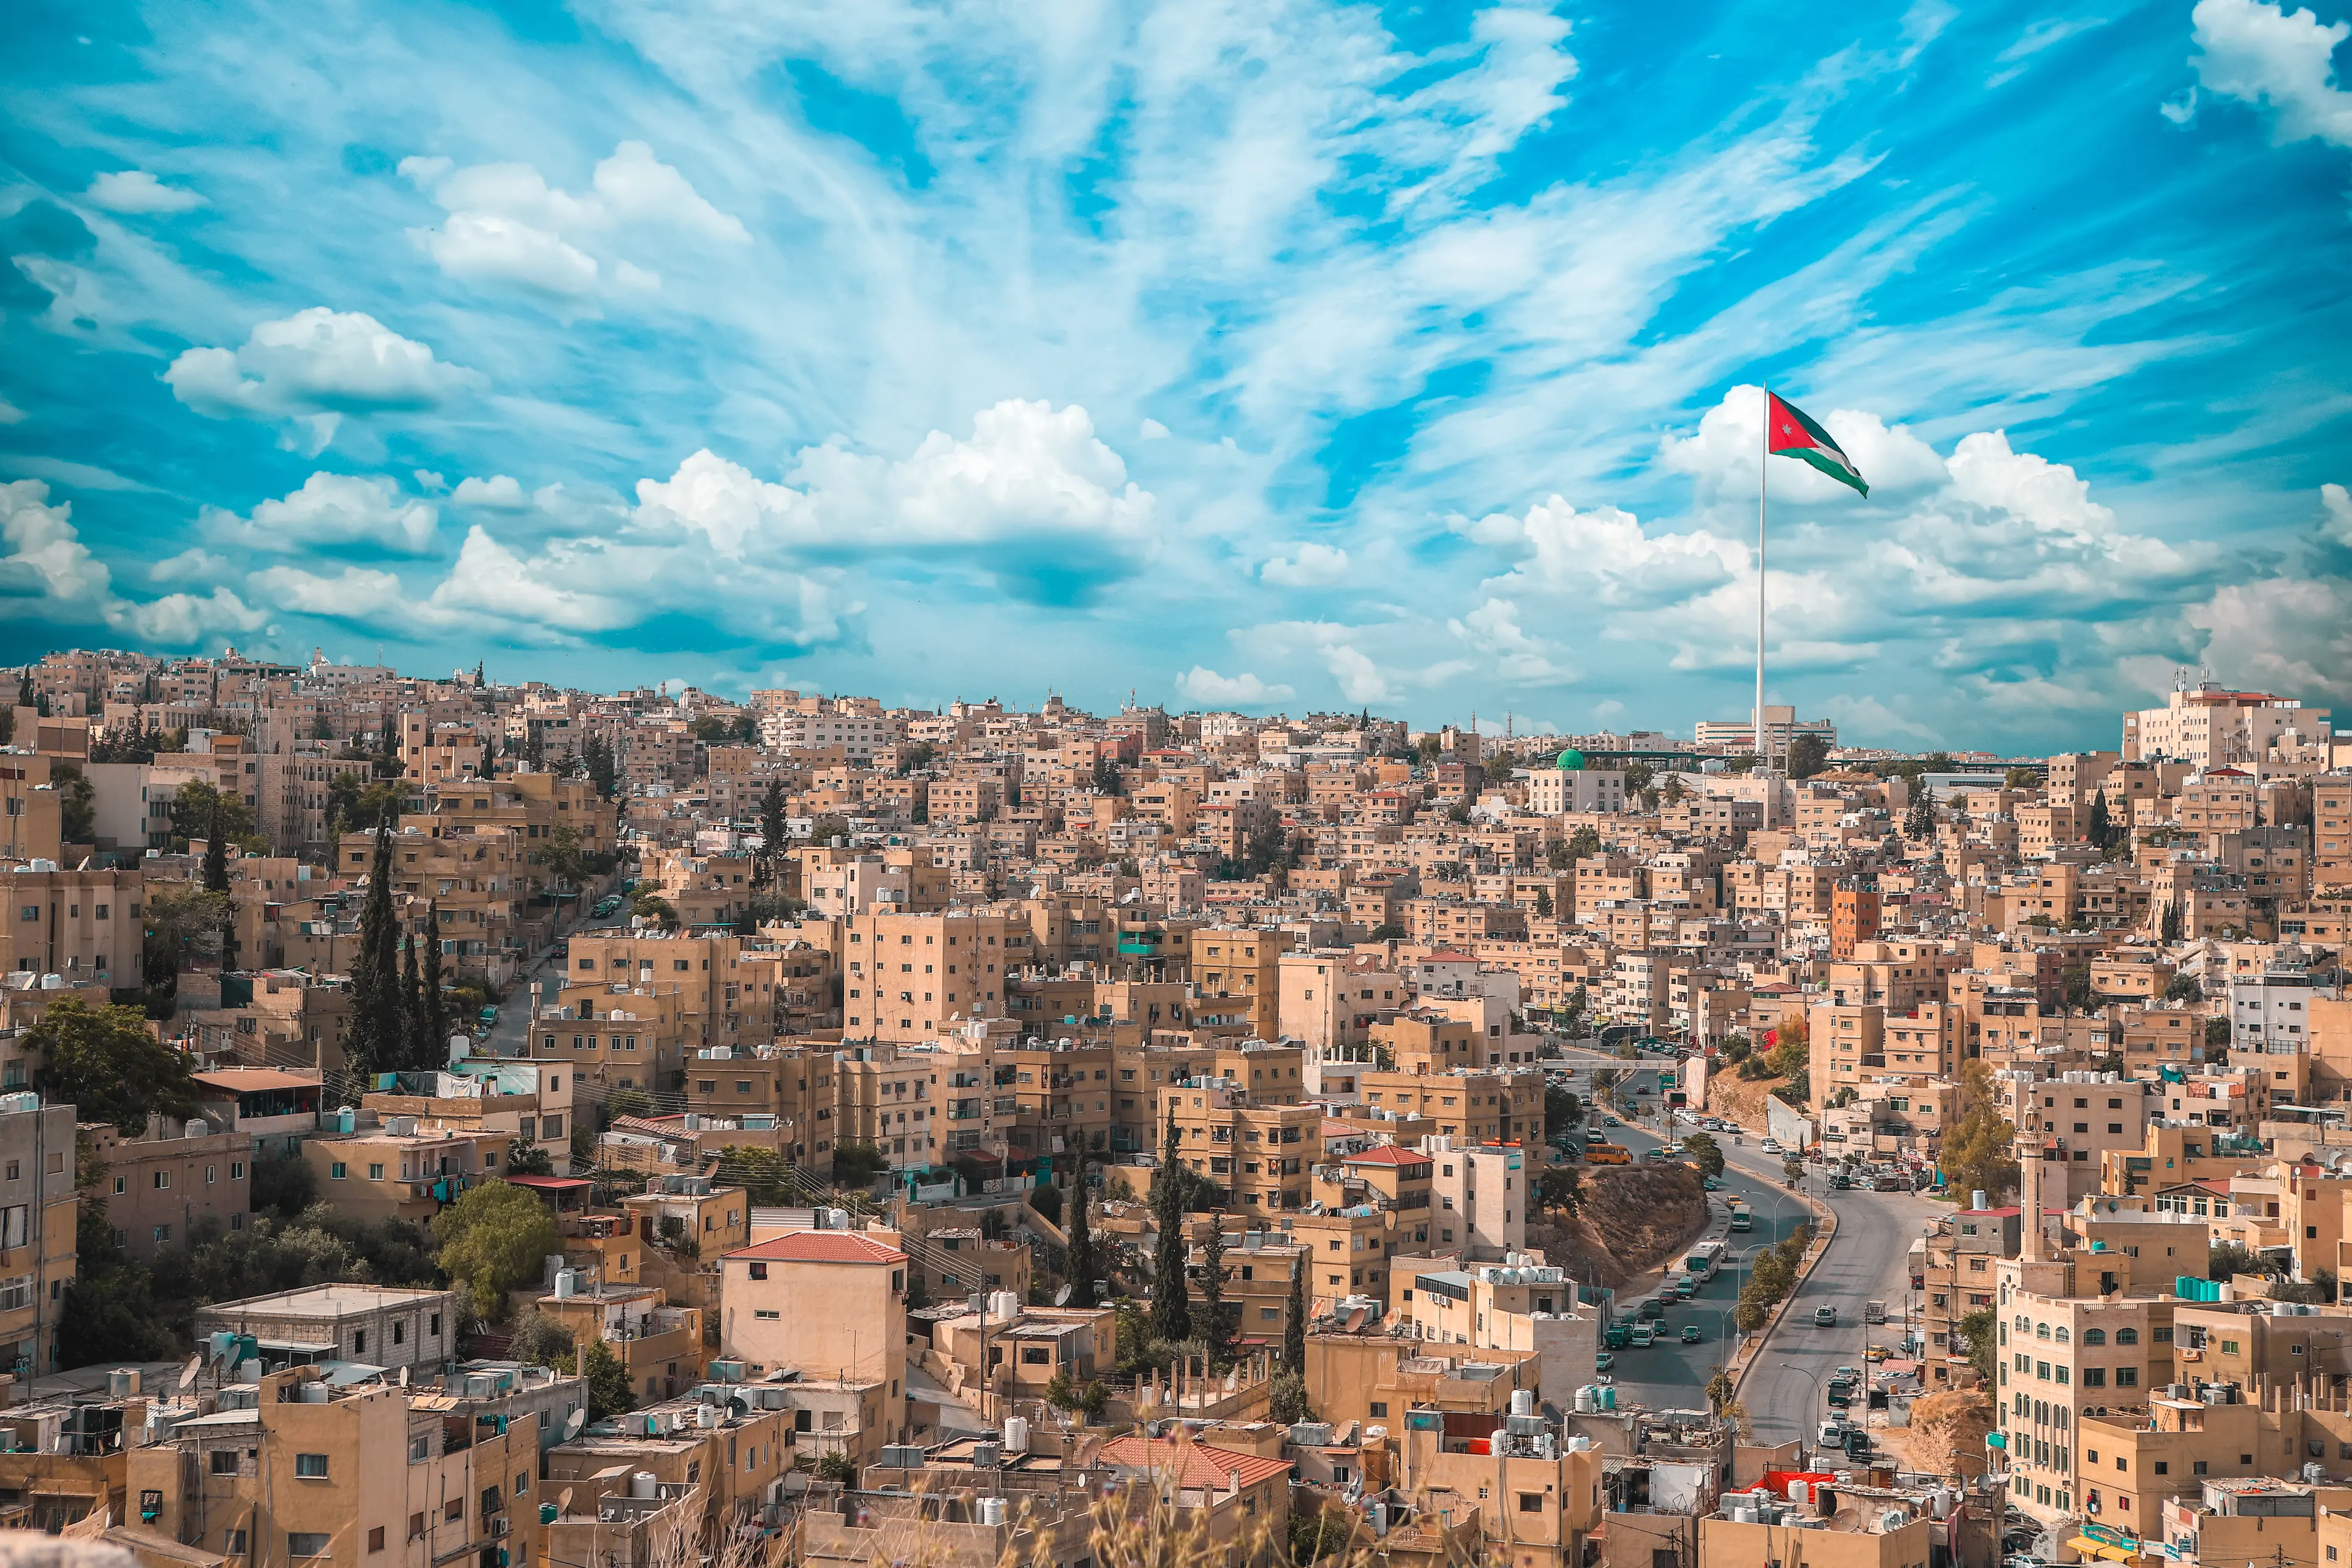 City skyline with Jordanian flag